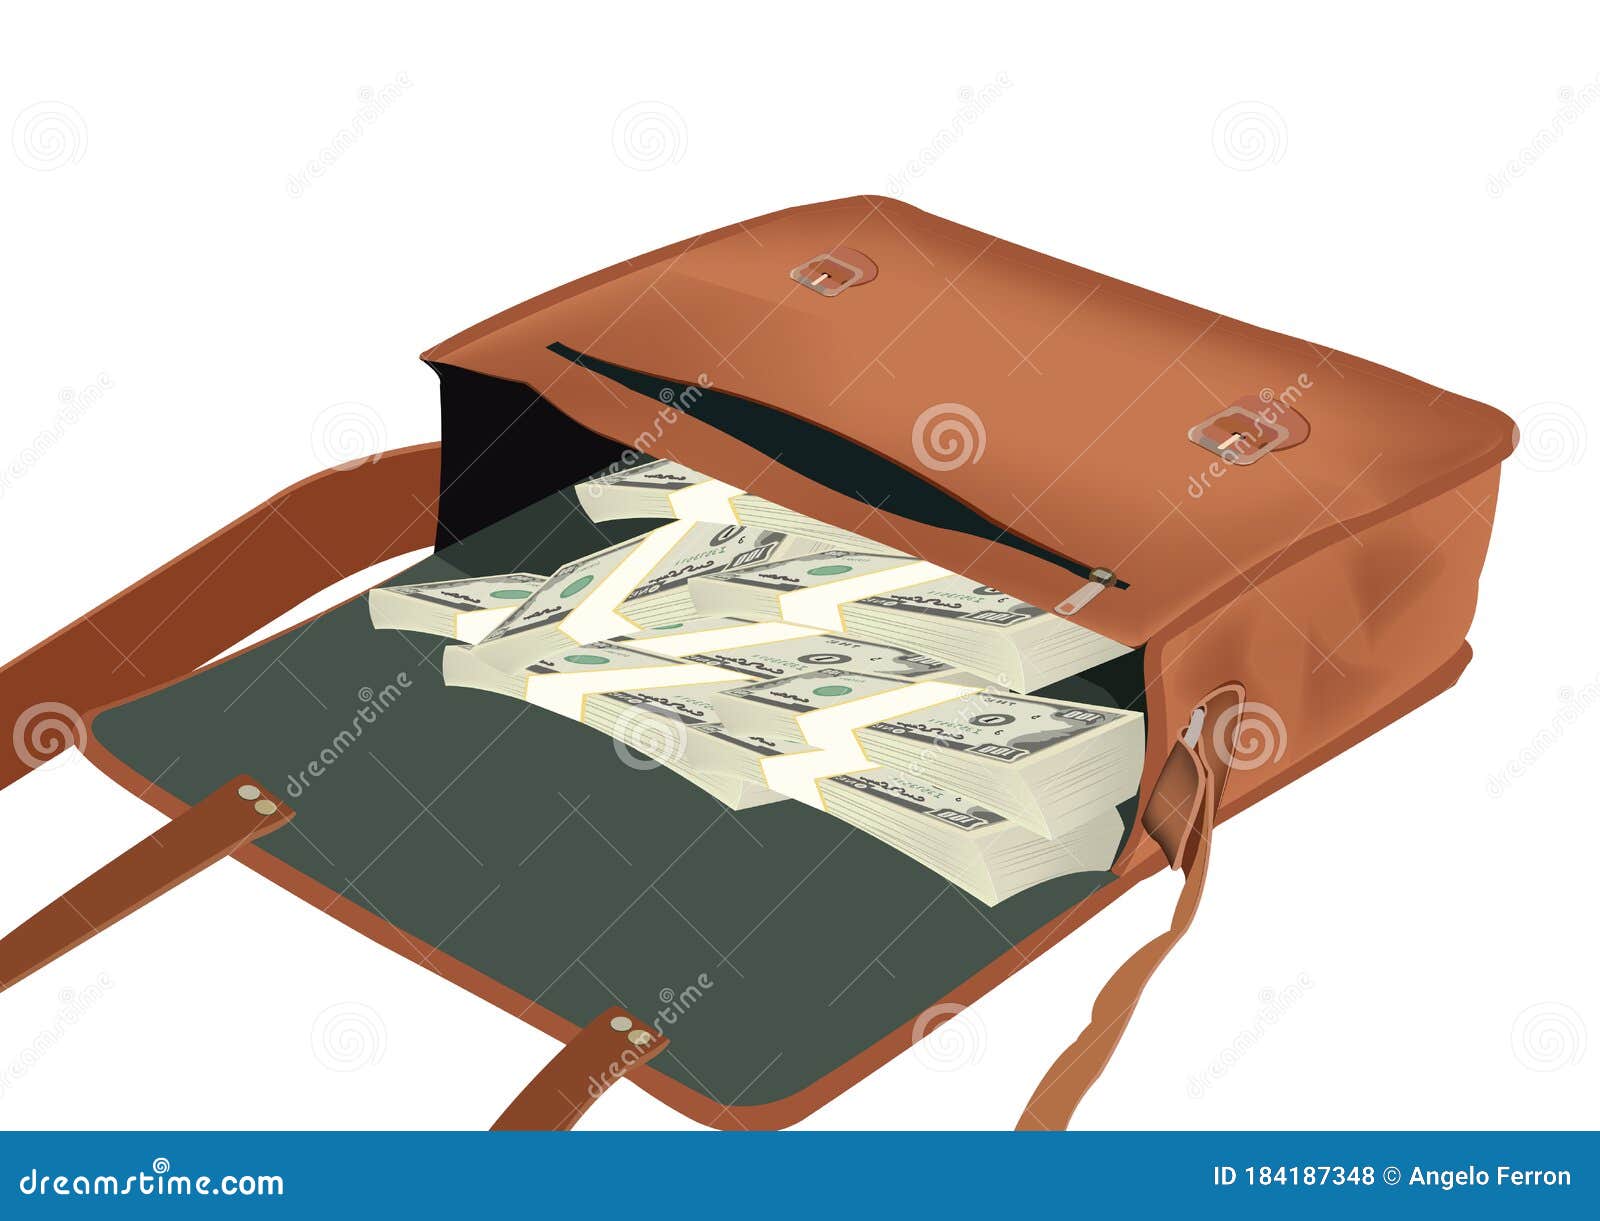 currency-filled shoulder bag currency-filled shoulder bag currency-filled shoulder bag